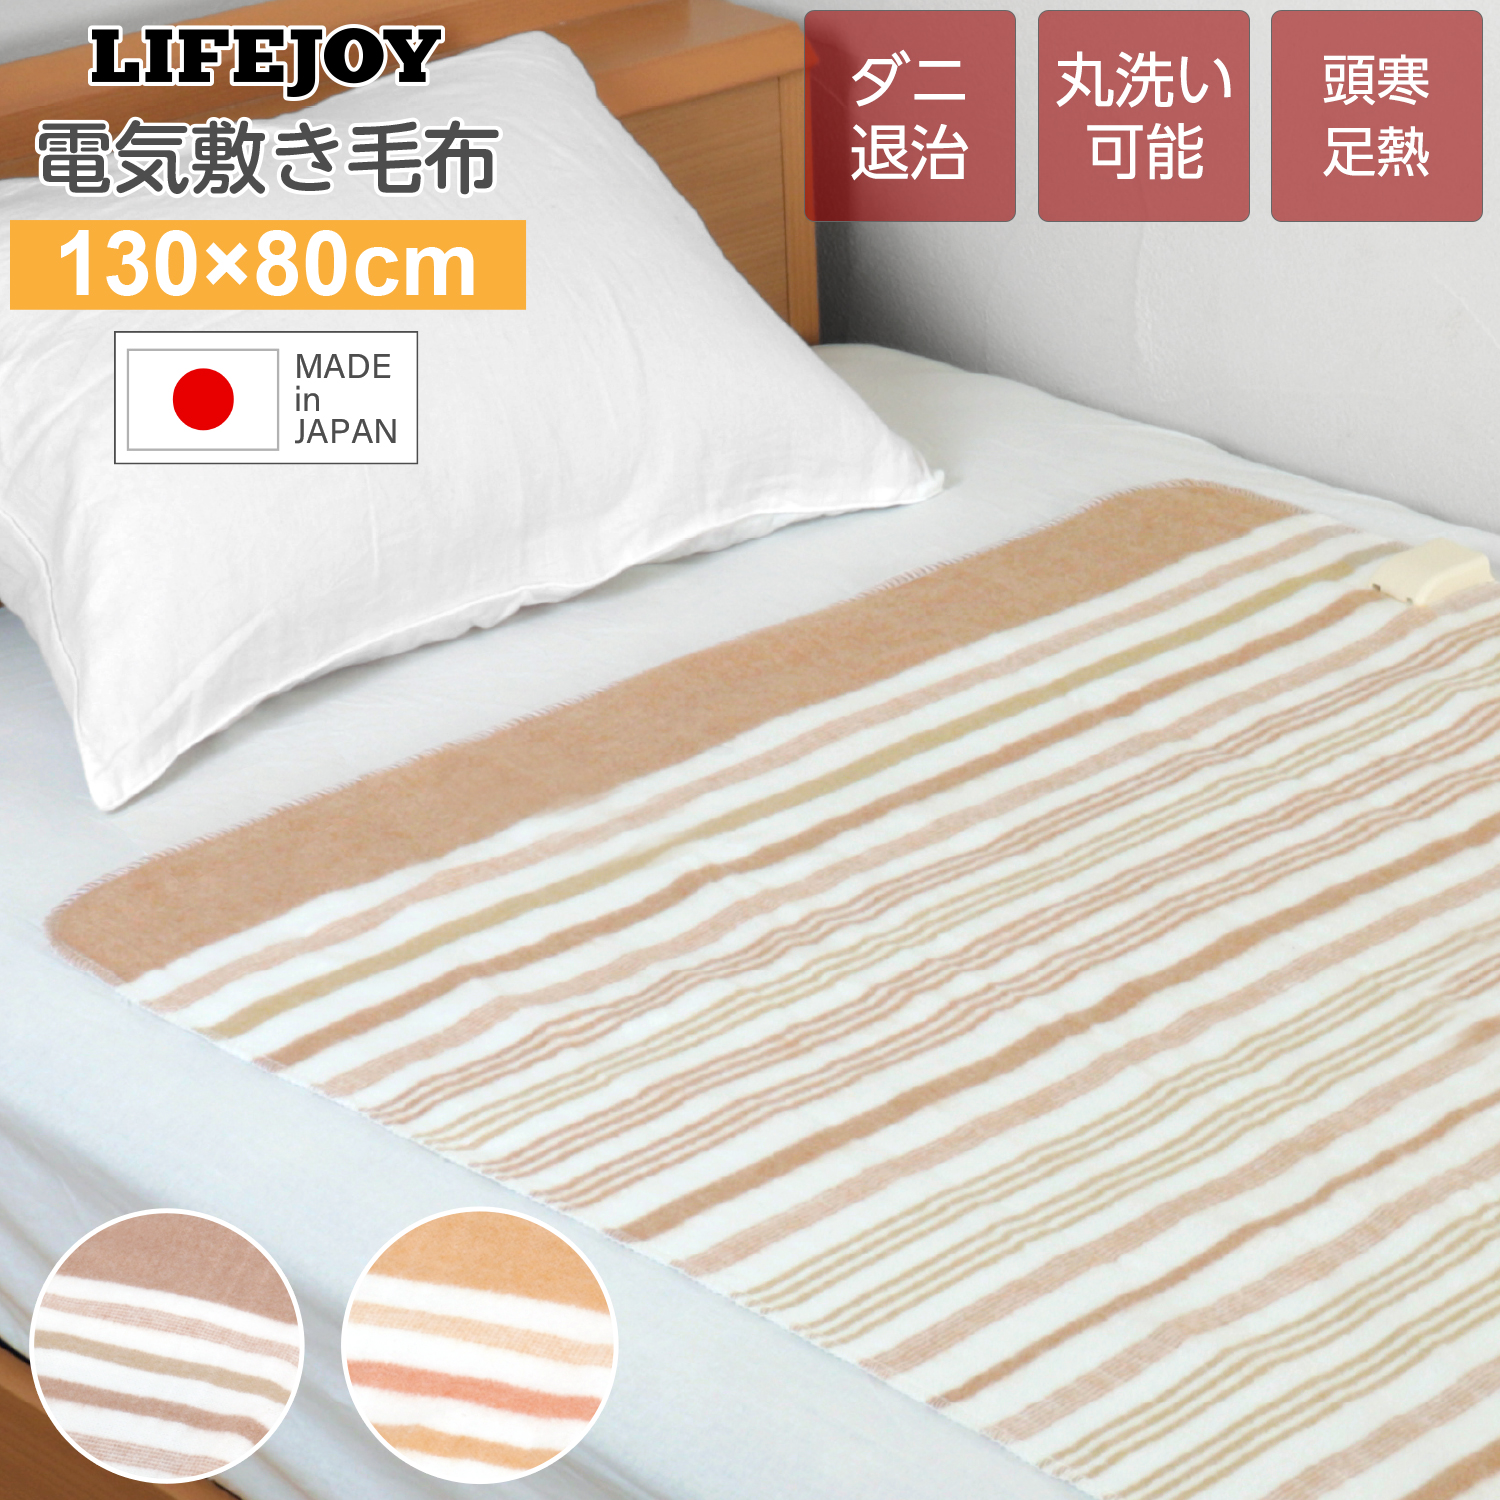 日本製 電気毛布 敷き毛布 130cm×80cm 2色 シングル 洗える ダニ退治